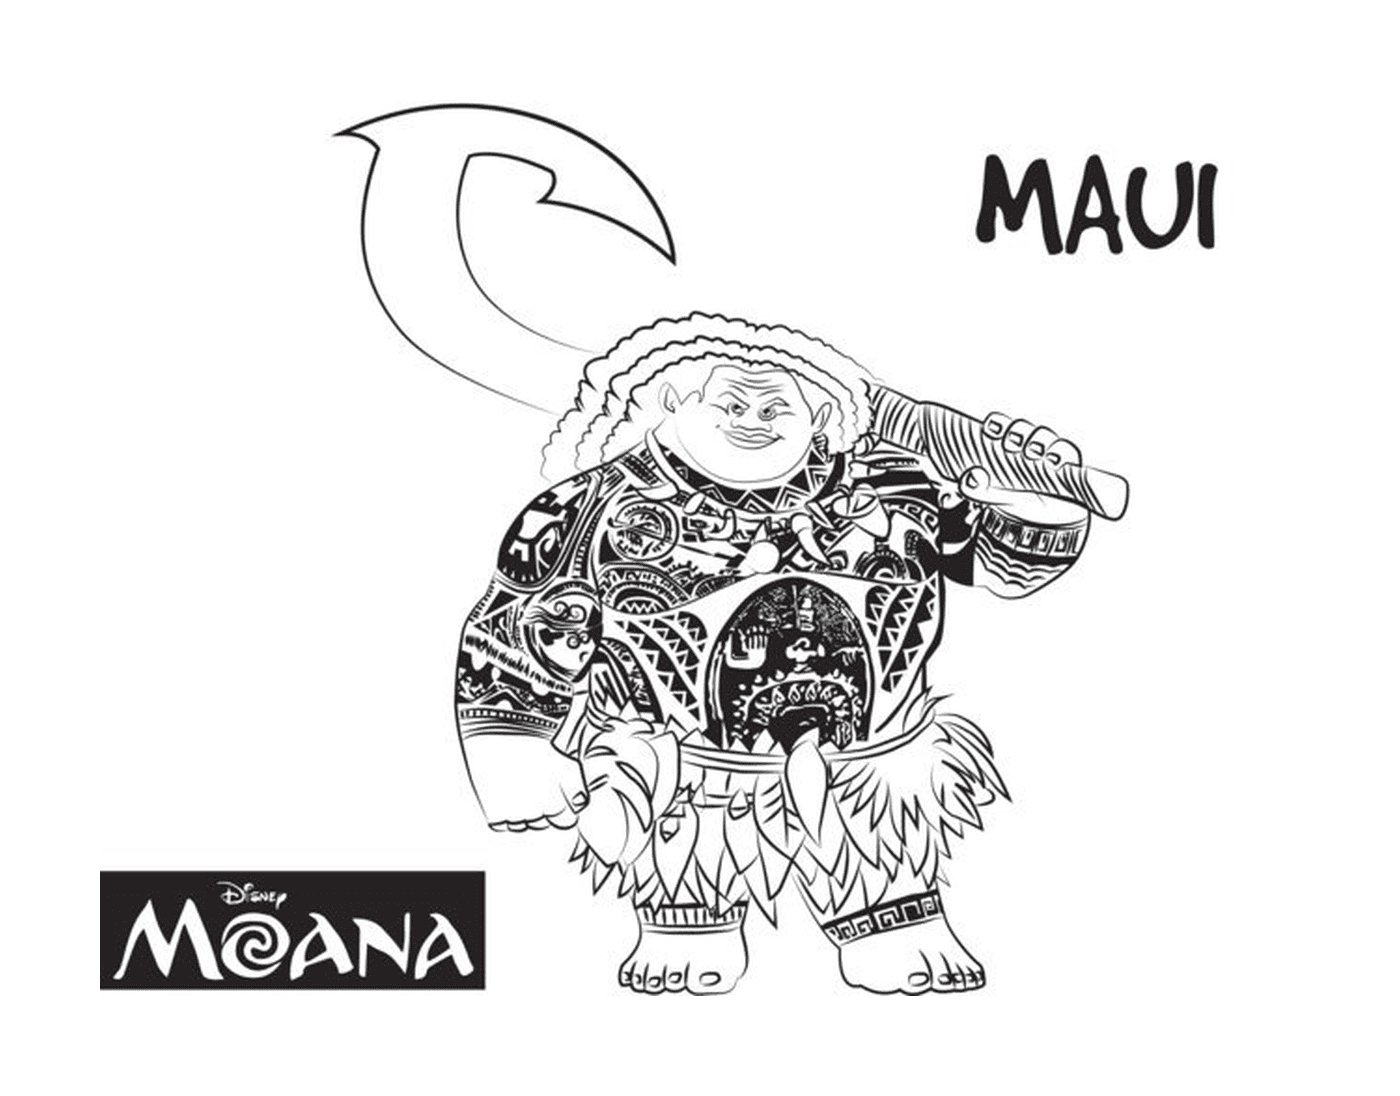  Maui, homem forte de Moana 